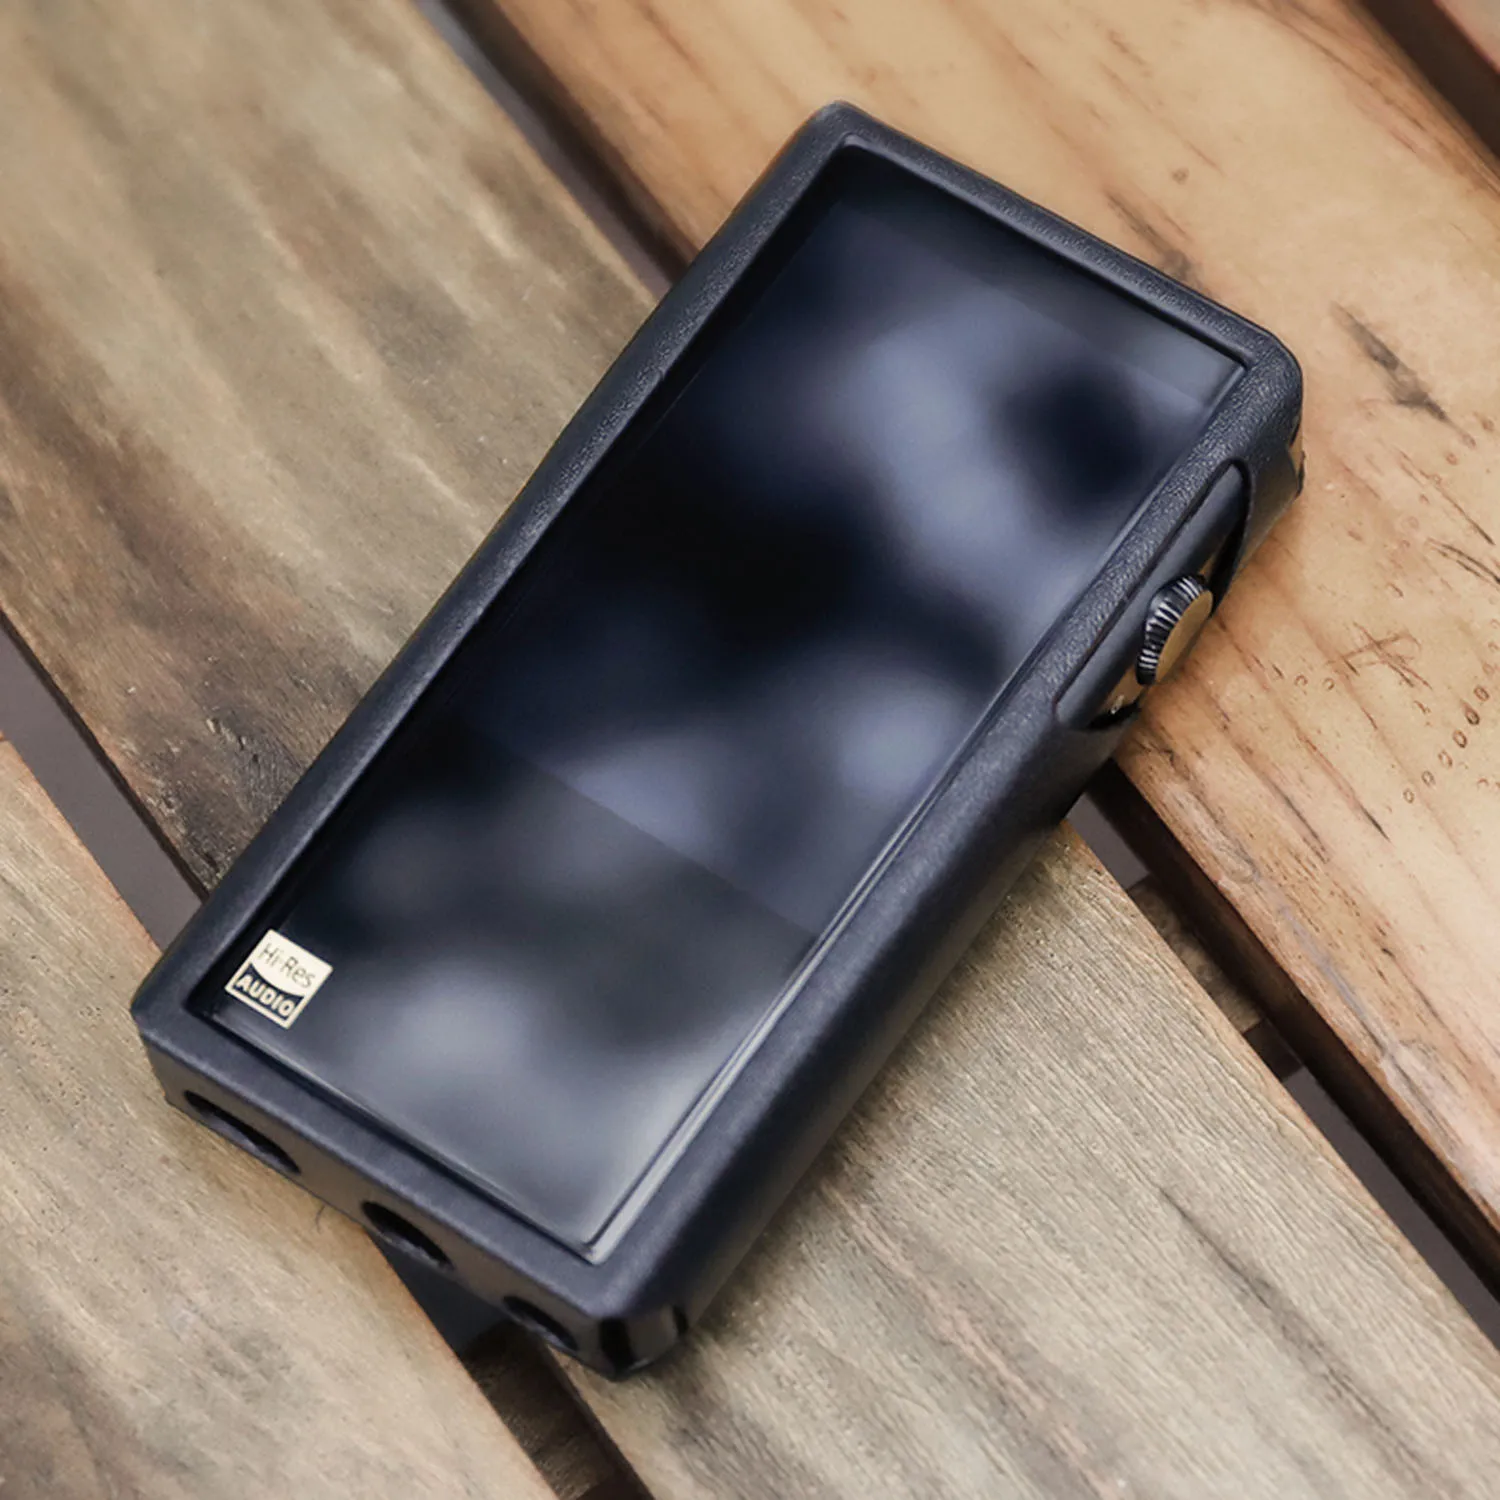 SHANLING кожаный чехол для M5s MP3 плеер мини DAP музыкальный плеер; цвет черный, коричневый, красный